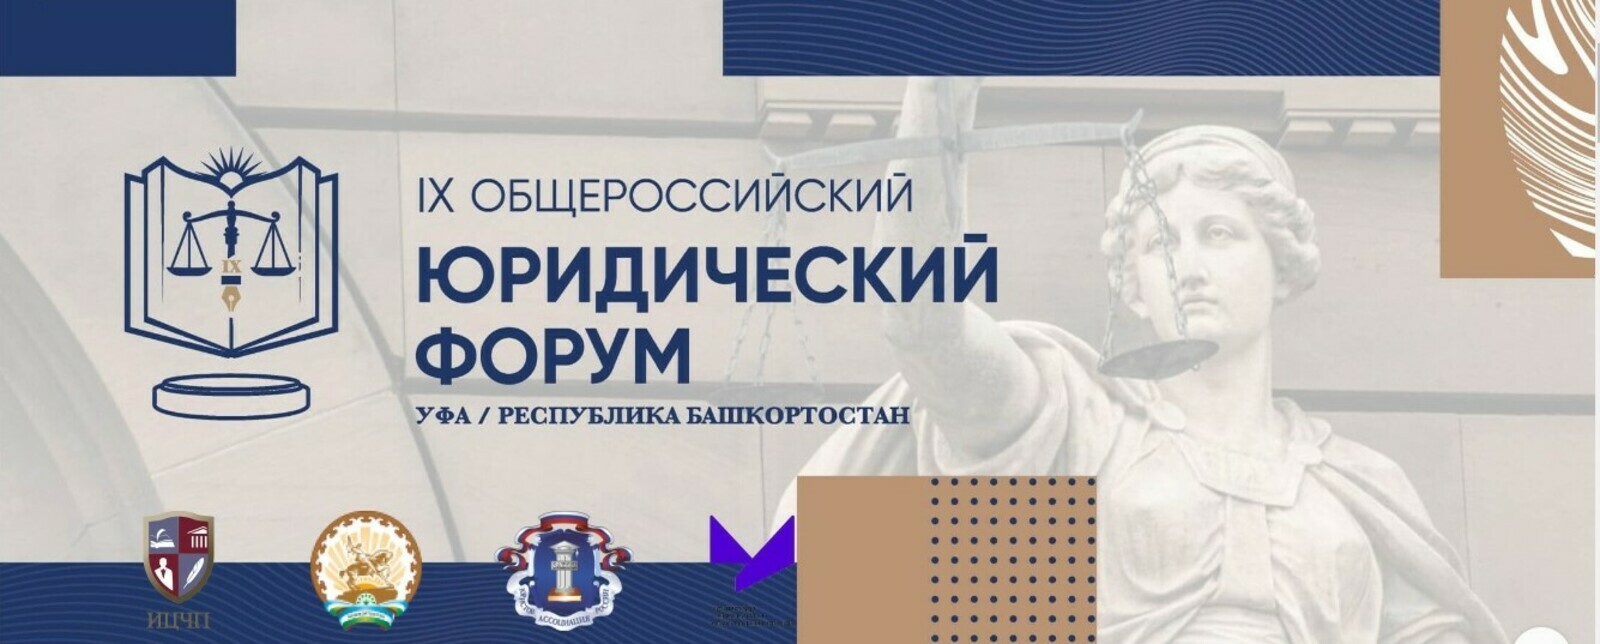 В Башкирии состоится Общероссийский юридический форум